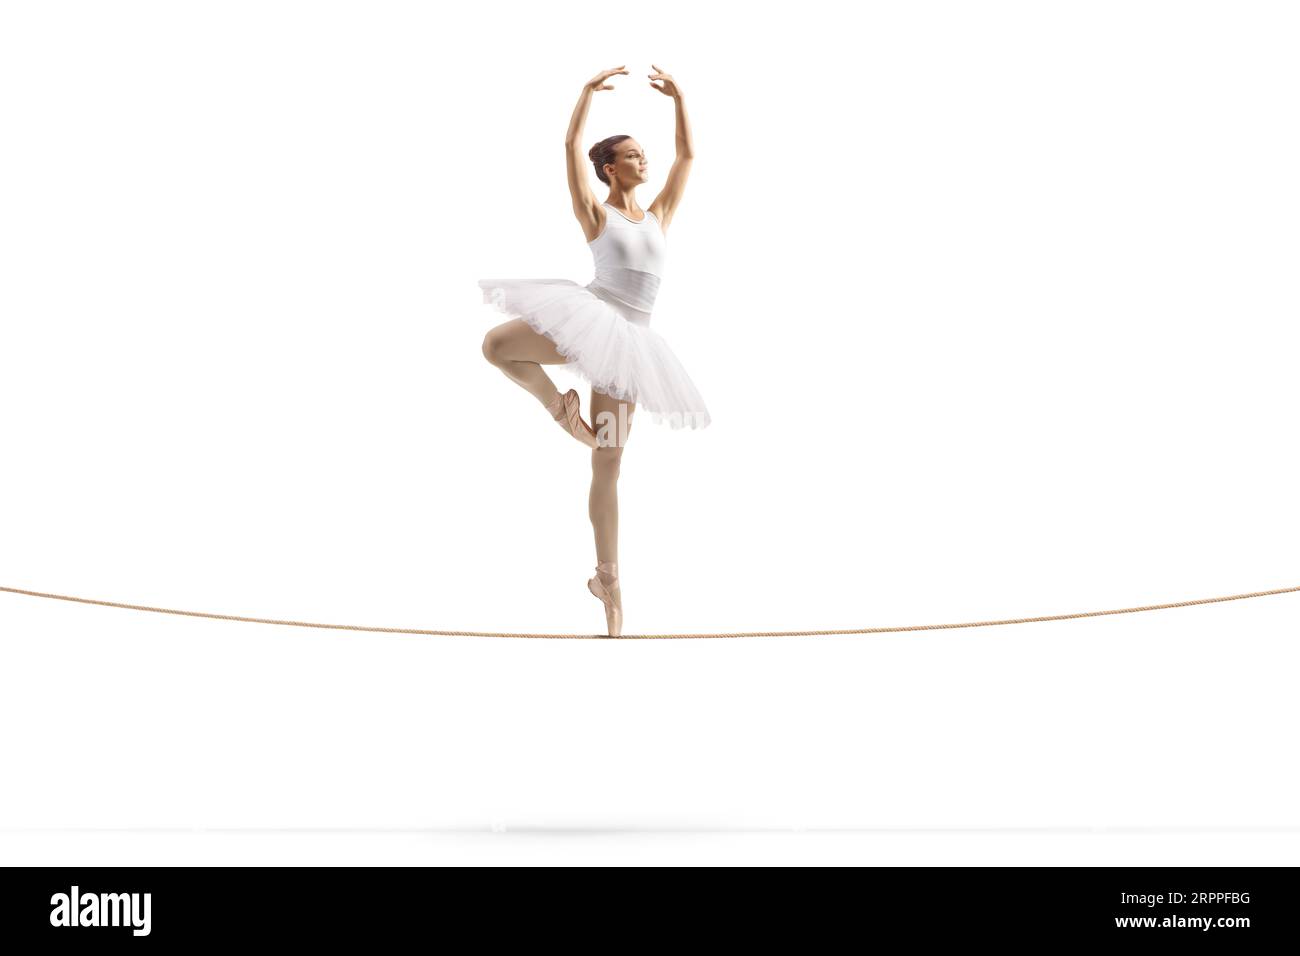 Plan complet d'une ballerine dansant sur une corde raide isolée sur fond blanc Banque D'Images